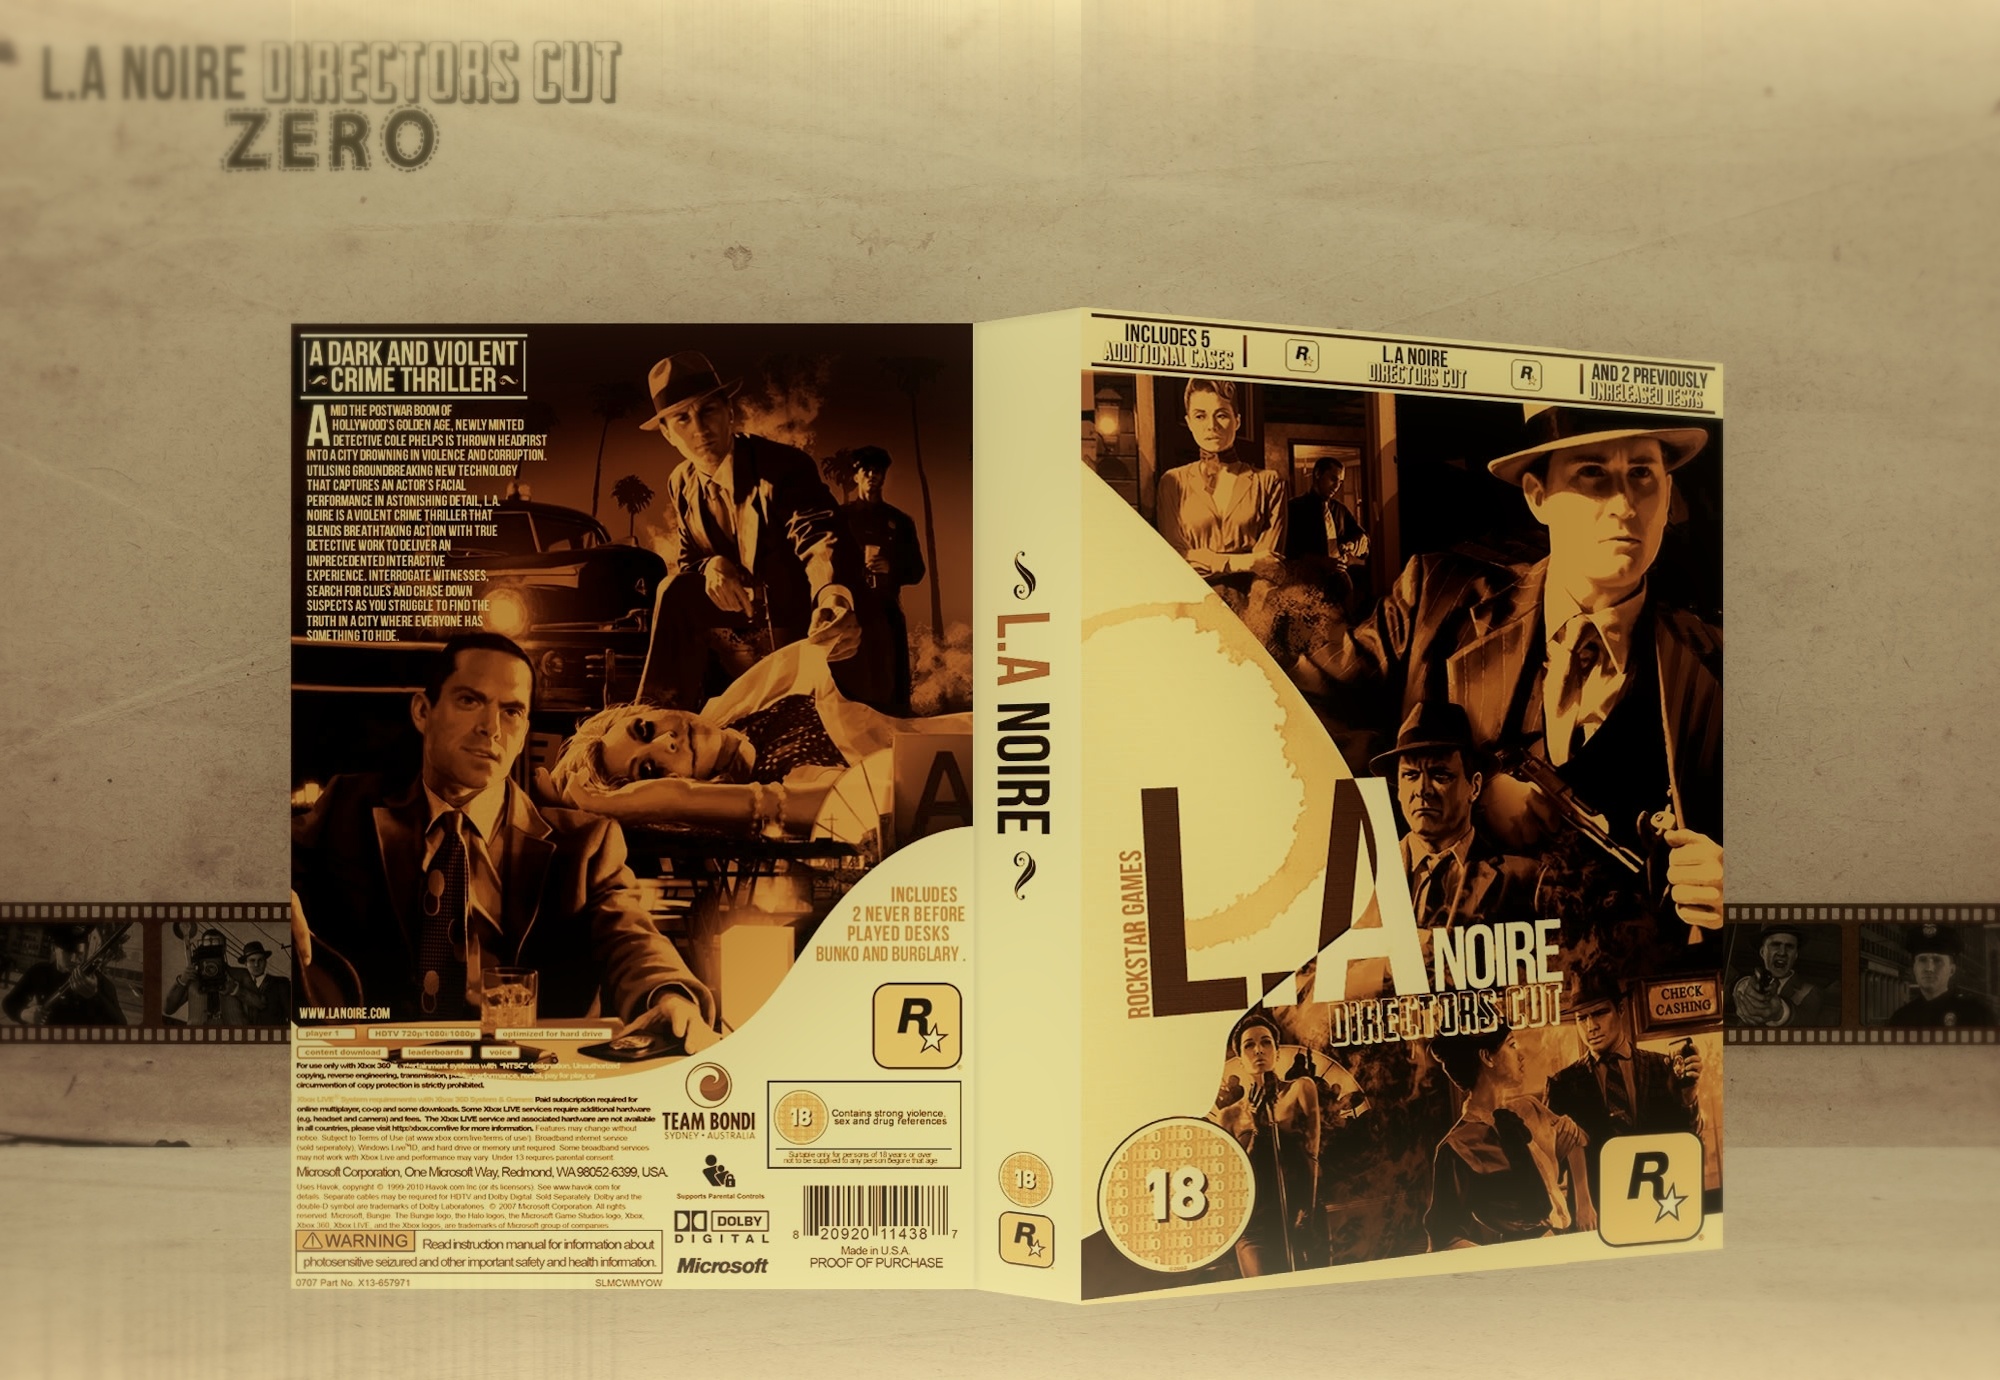 L A Noire Directors Cut Xbox 360 Box Art Cover By Ab501ut3 Z3r0